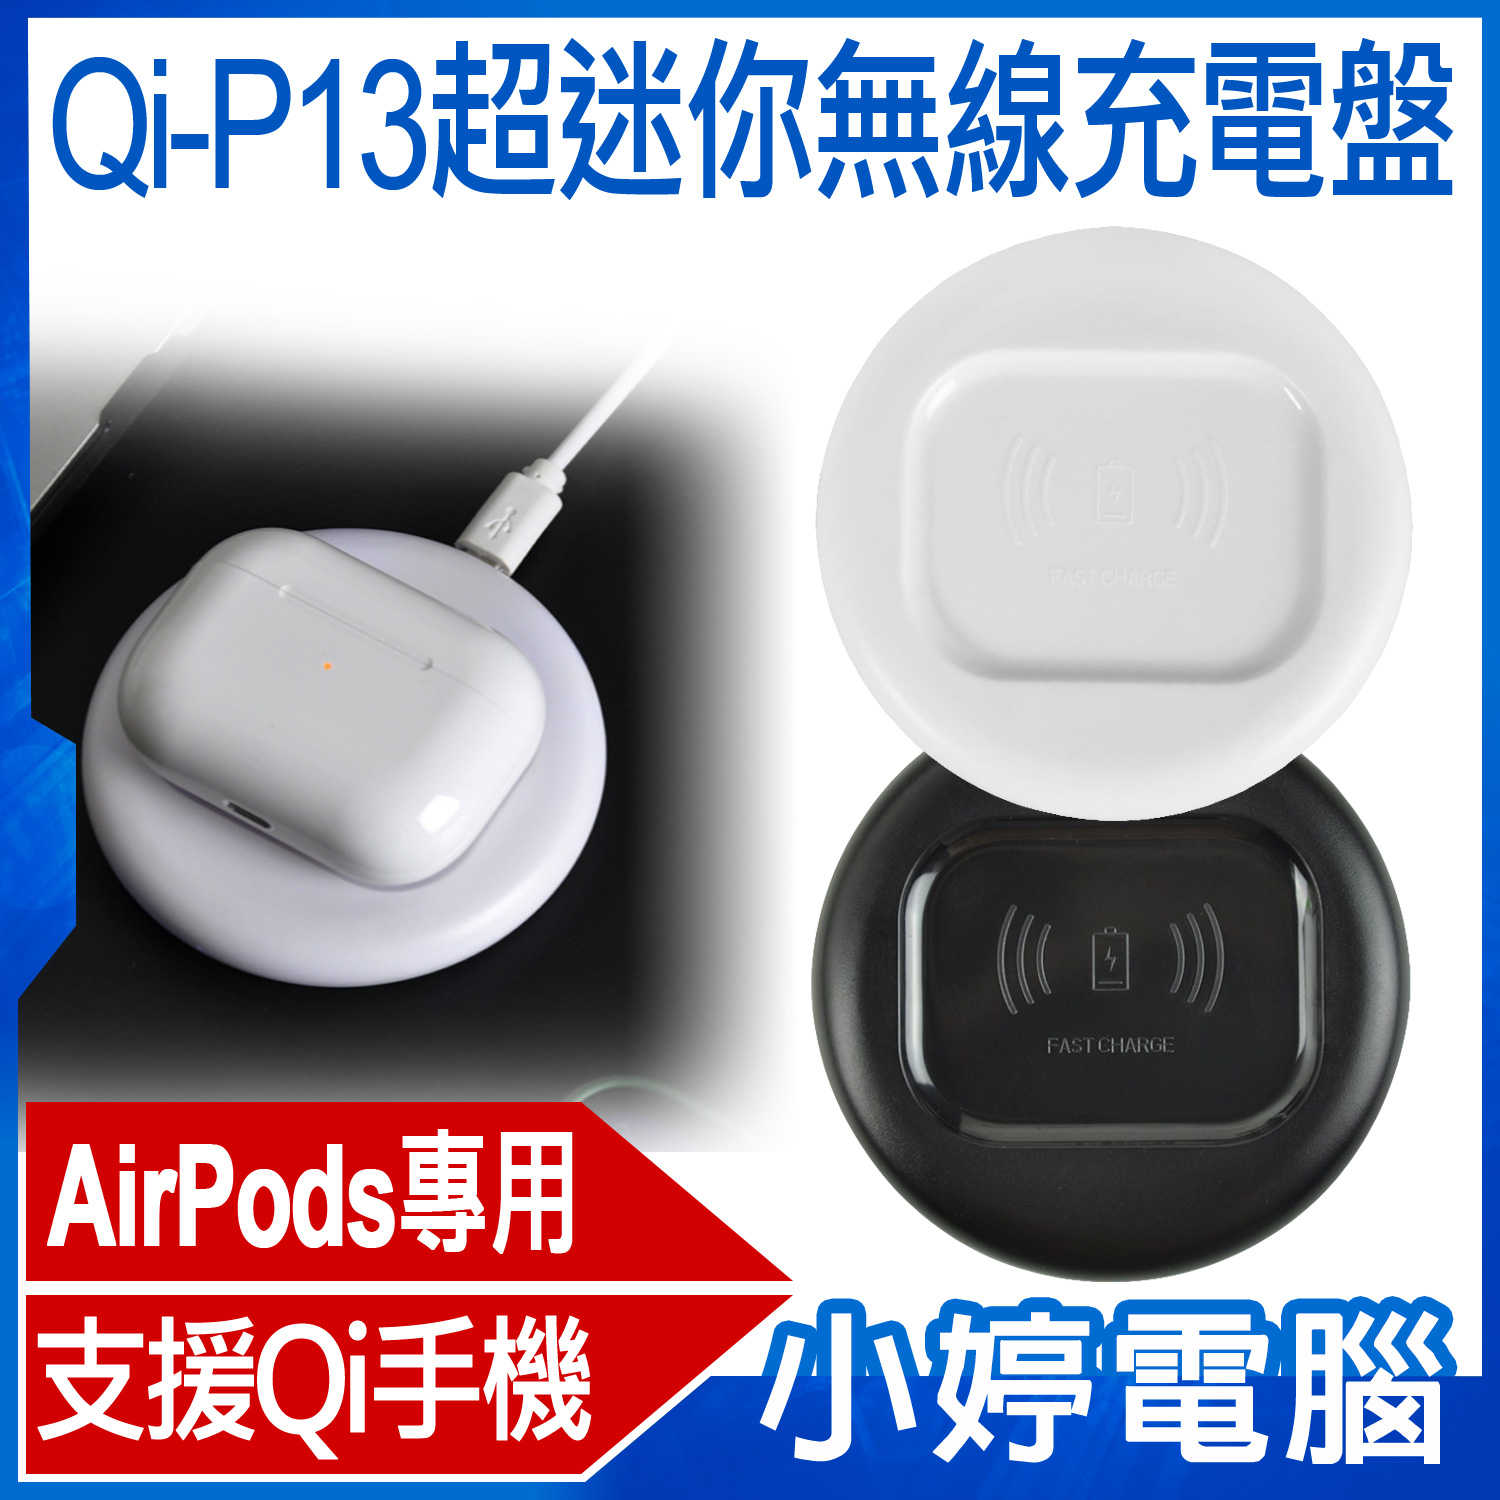 【小婷電腦】Qi-P13超迷你無線充電盤 AirPods/Pro專用 Qi無線充電器 輕巧迷你 Apple